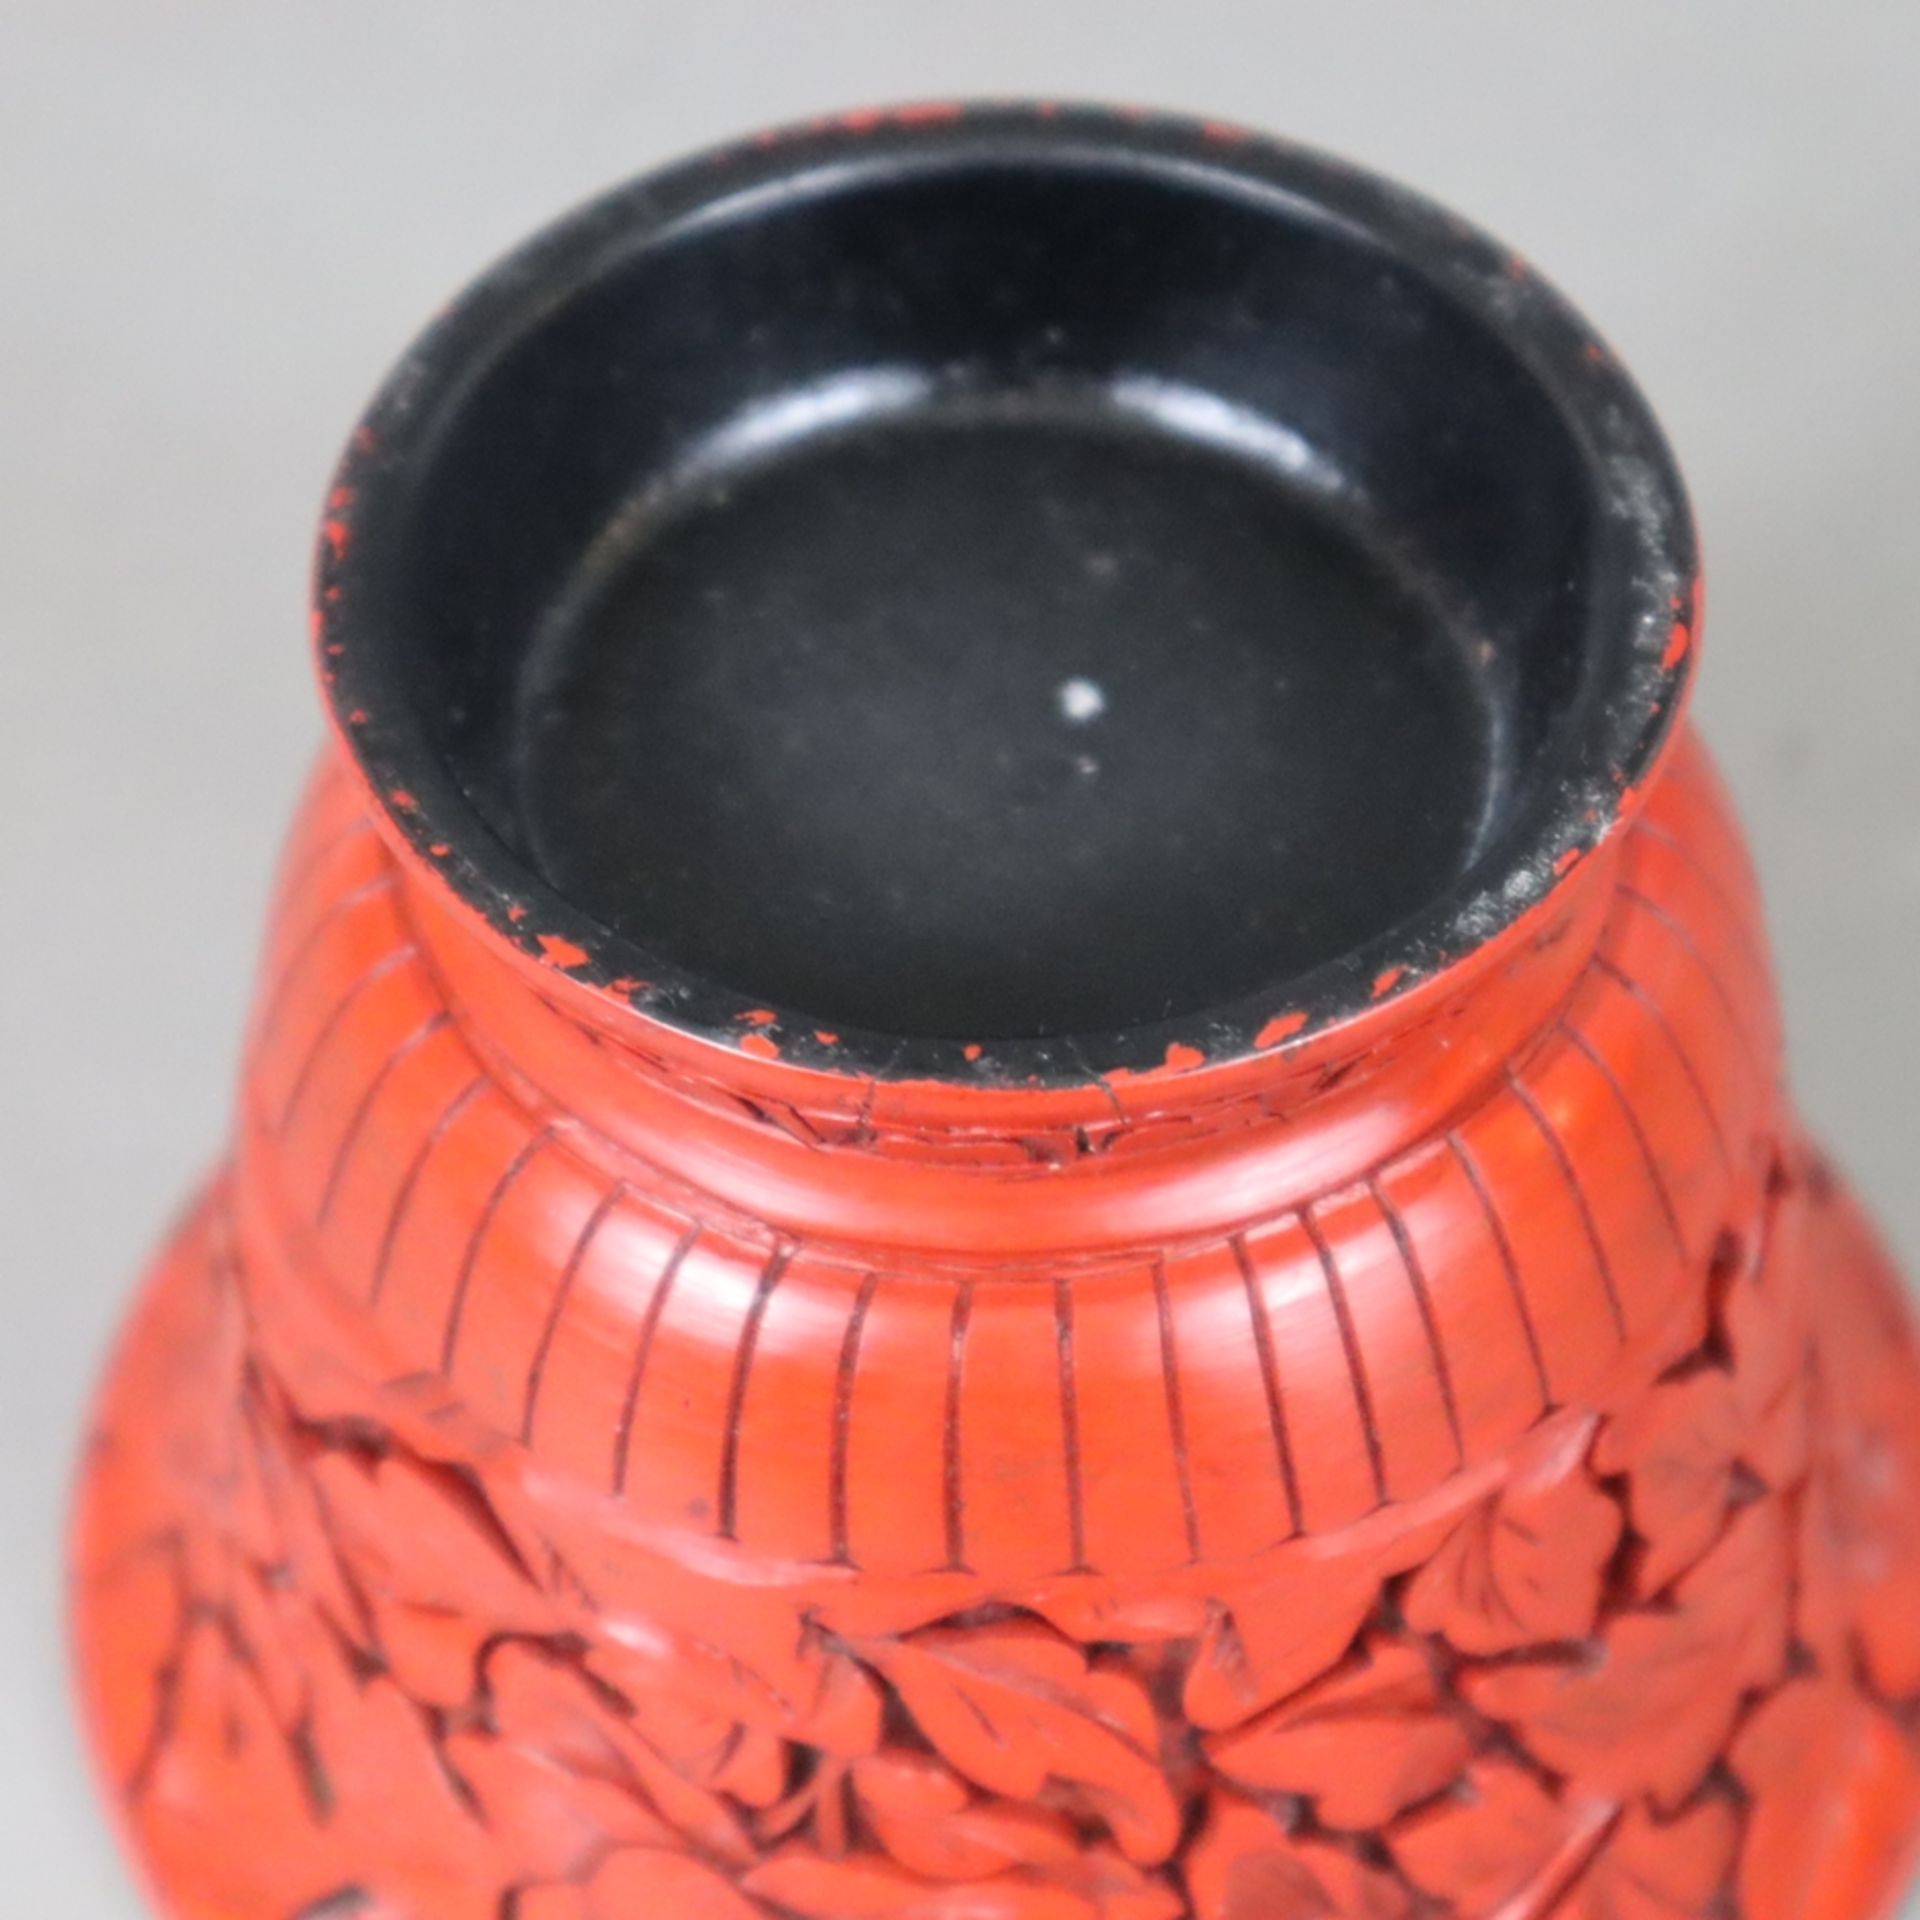 Fußbecher - China, runde Kuppe mit ausgestelltem Rand über niedrigem Fuß, außen Rotlack mit Päonien - Bild 6 aus 6